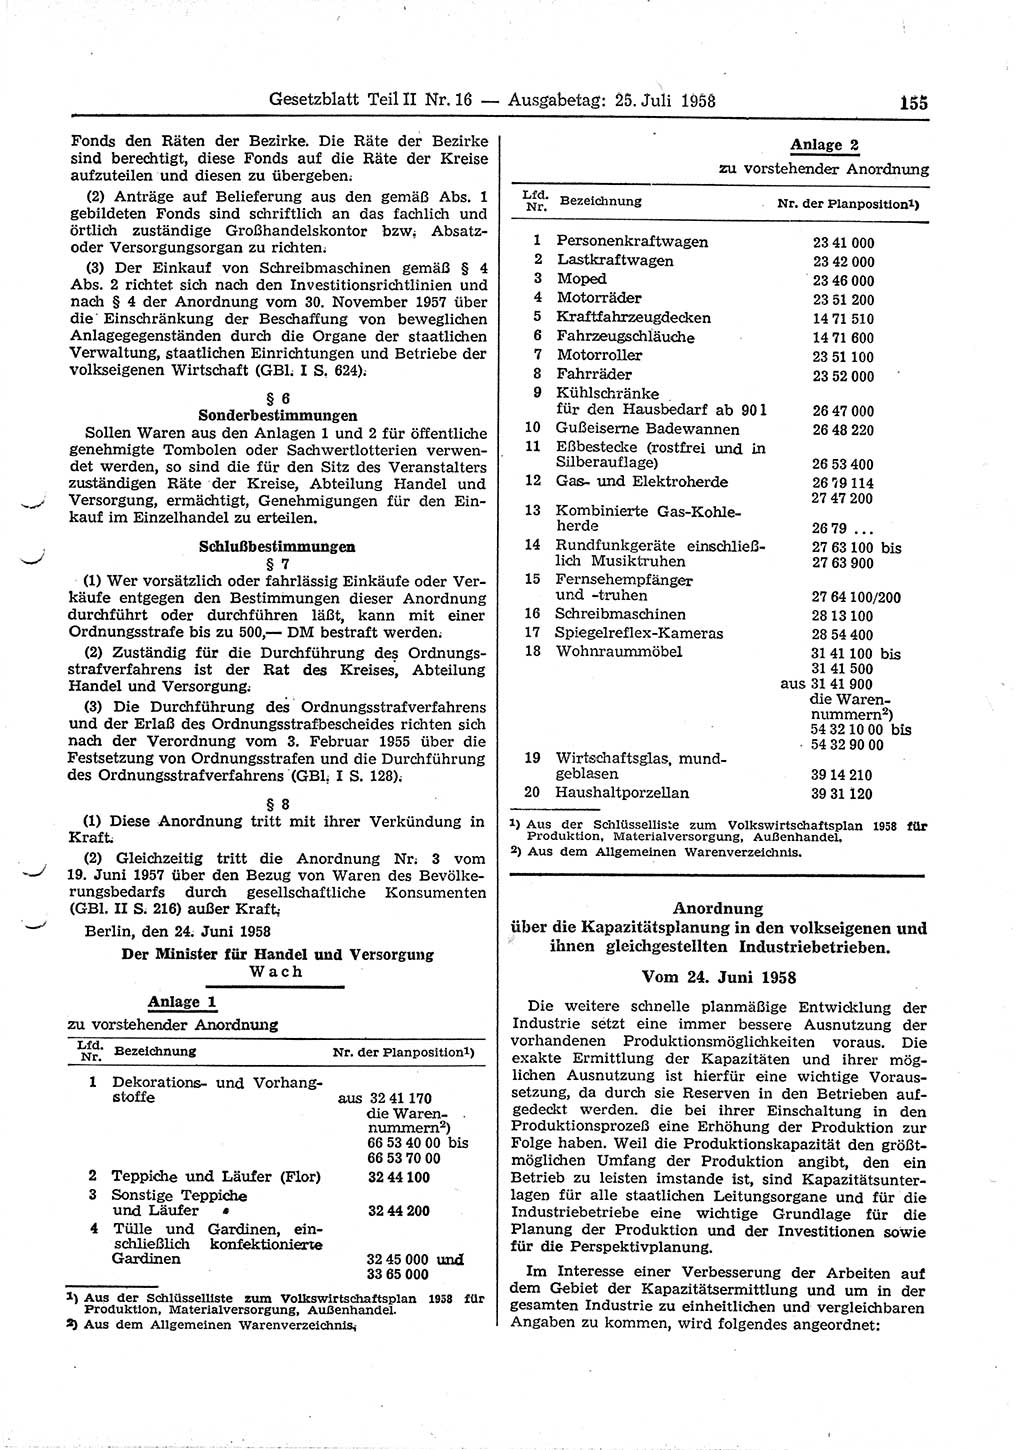 Gesetzblatt (GBl.) der Deutschen Demokratischen Republik (DDR) Teil ⅠⅠ 1958, Seite 155 (GBl. DDR ⅠⅠ 1958, S. 155)